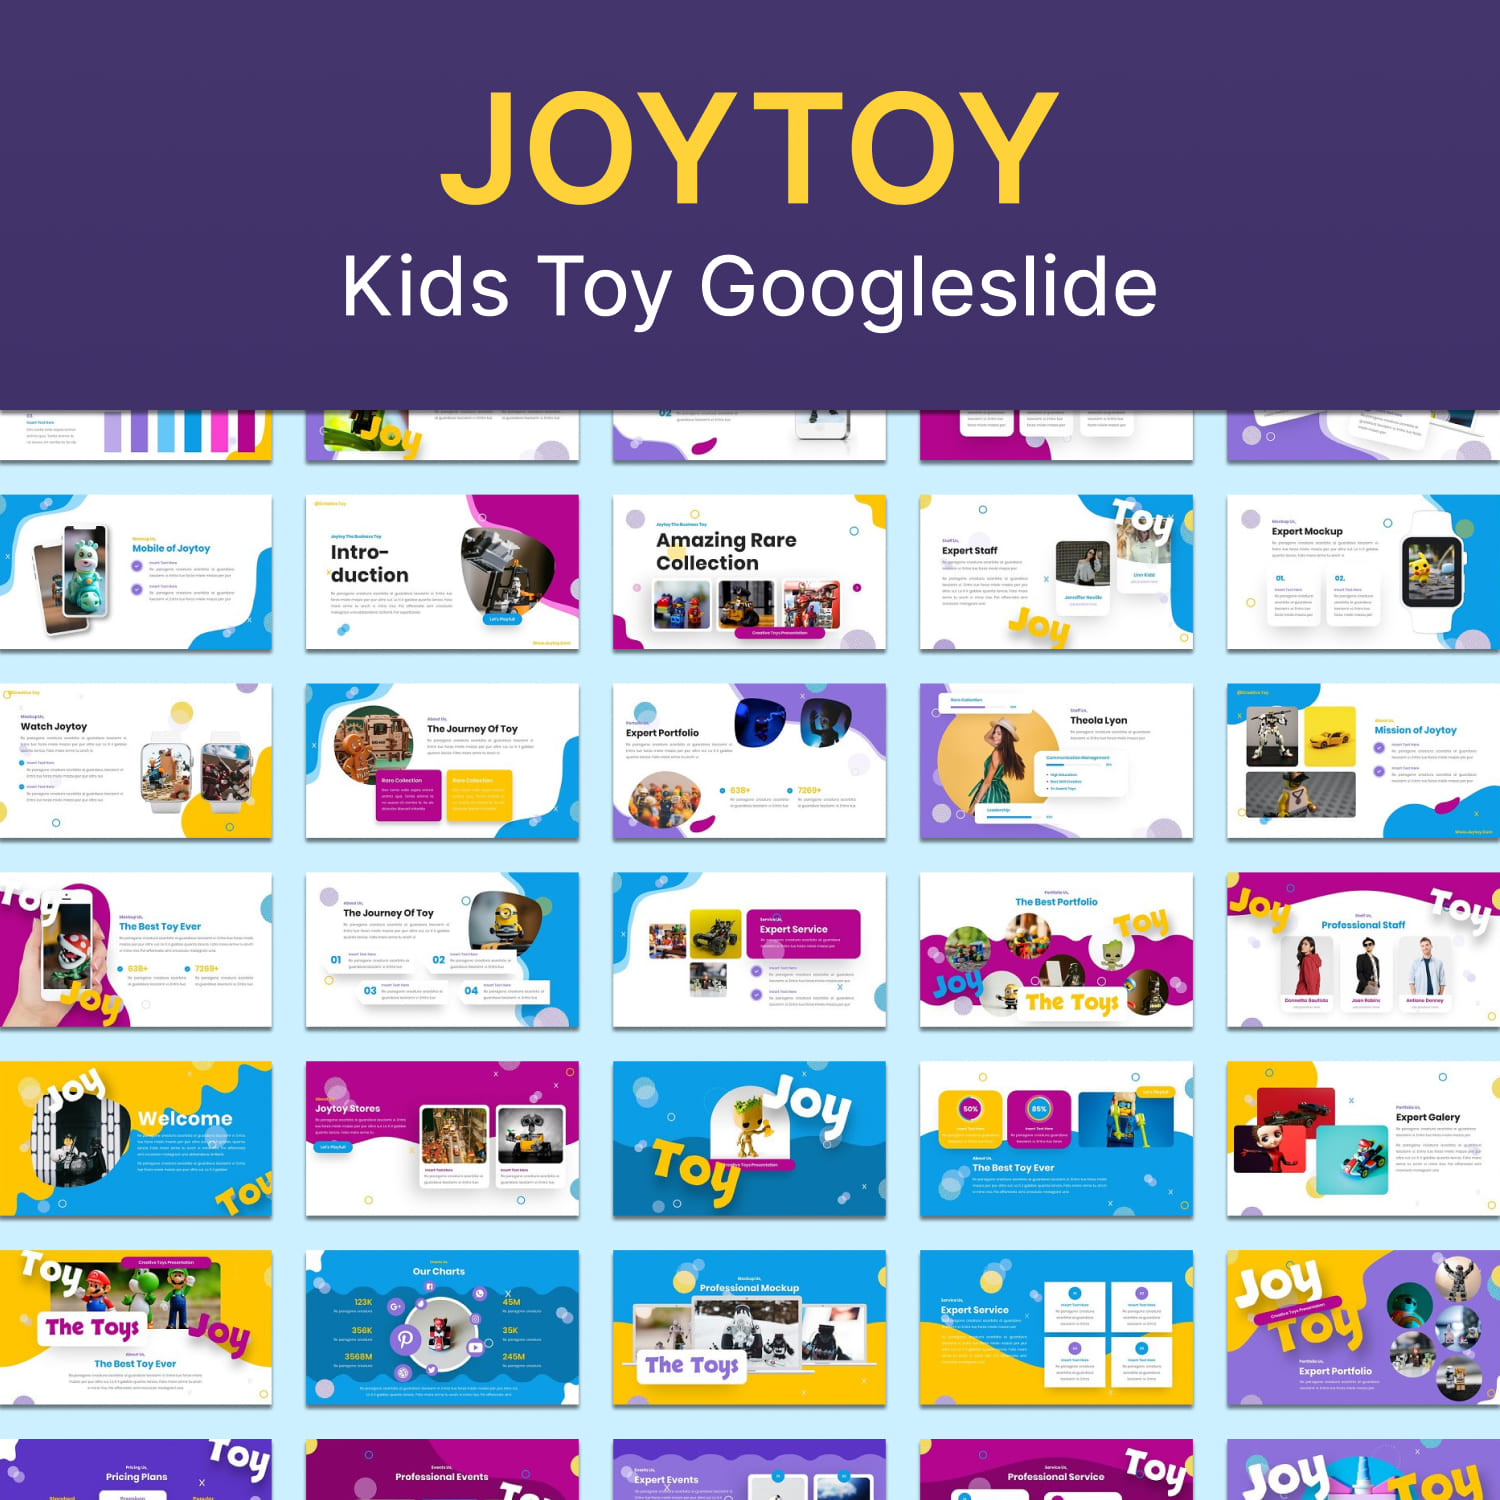 Joytoy - Kids Toy Googleslide.